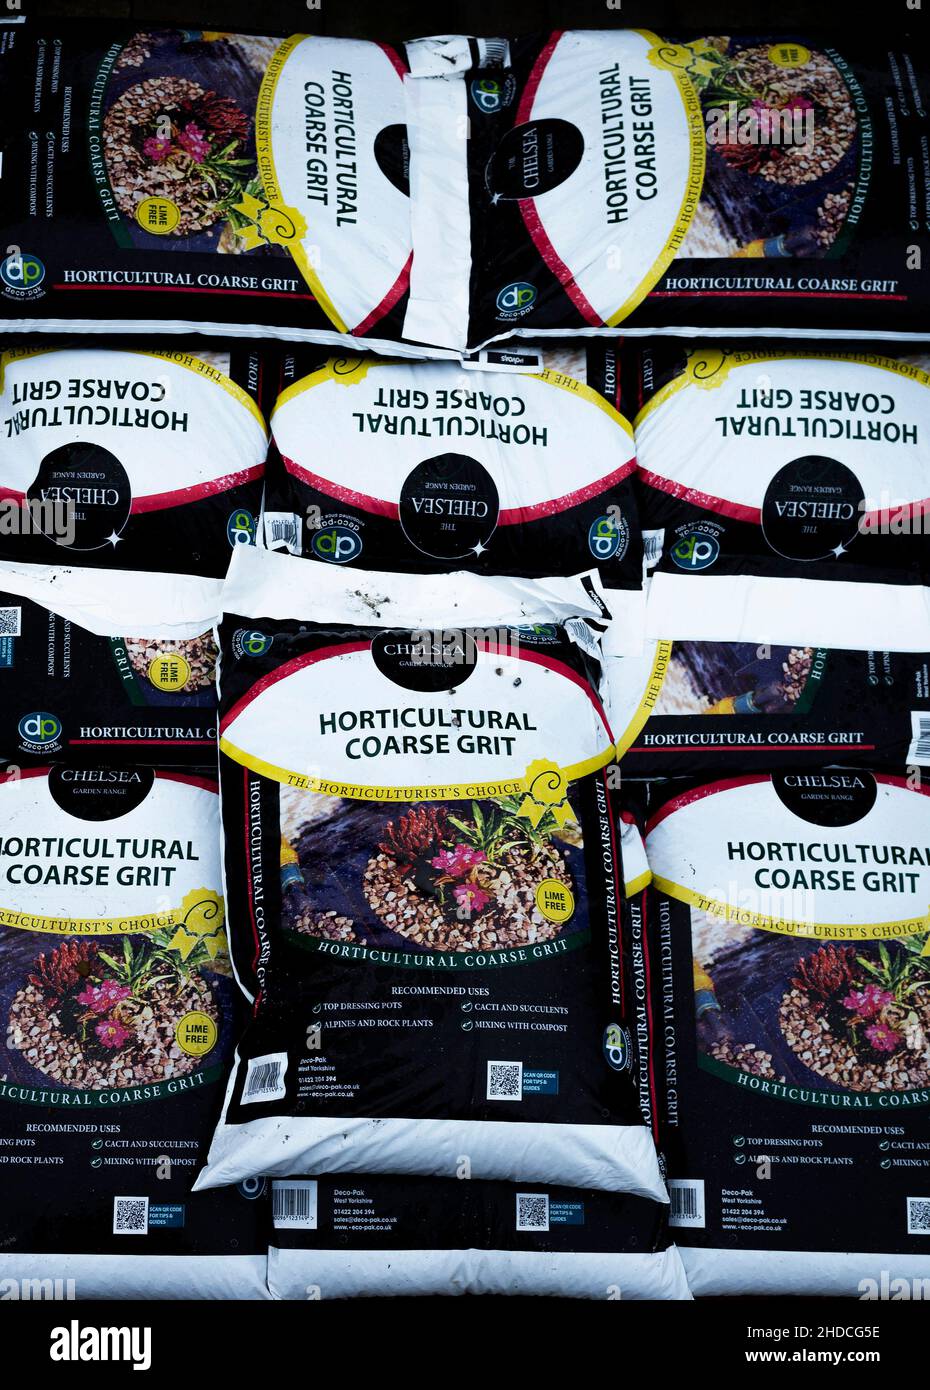 Une pile de sacs de gros grain horticole pour la plantation de pots de vinaigrette et l'amélioration du drainage dans les sols lourds, à vendre dans un centre de jardin Banque D'Images